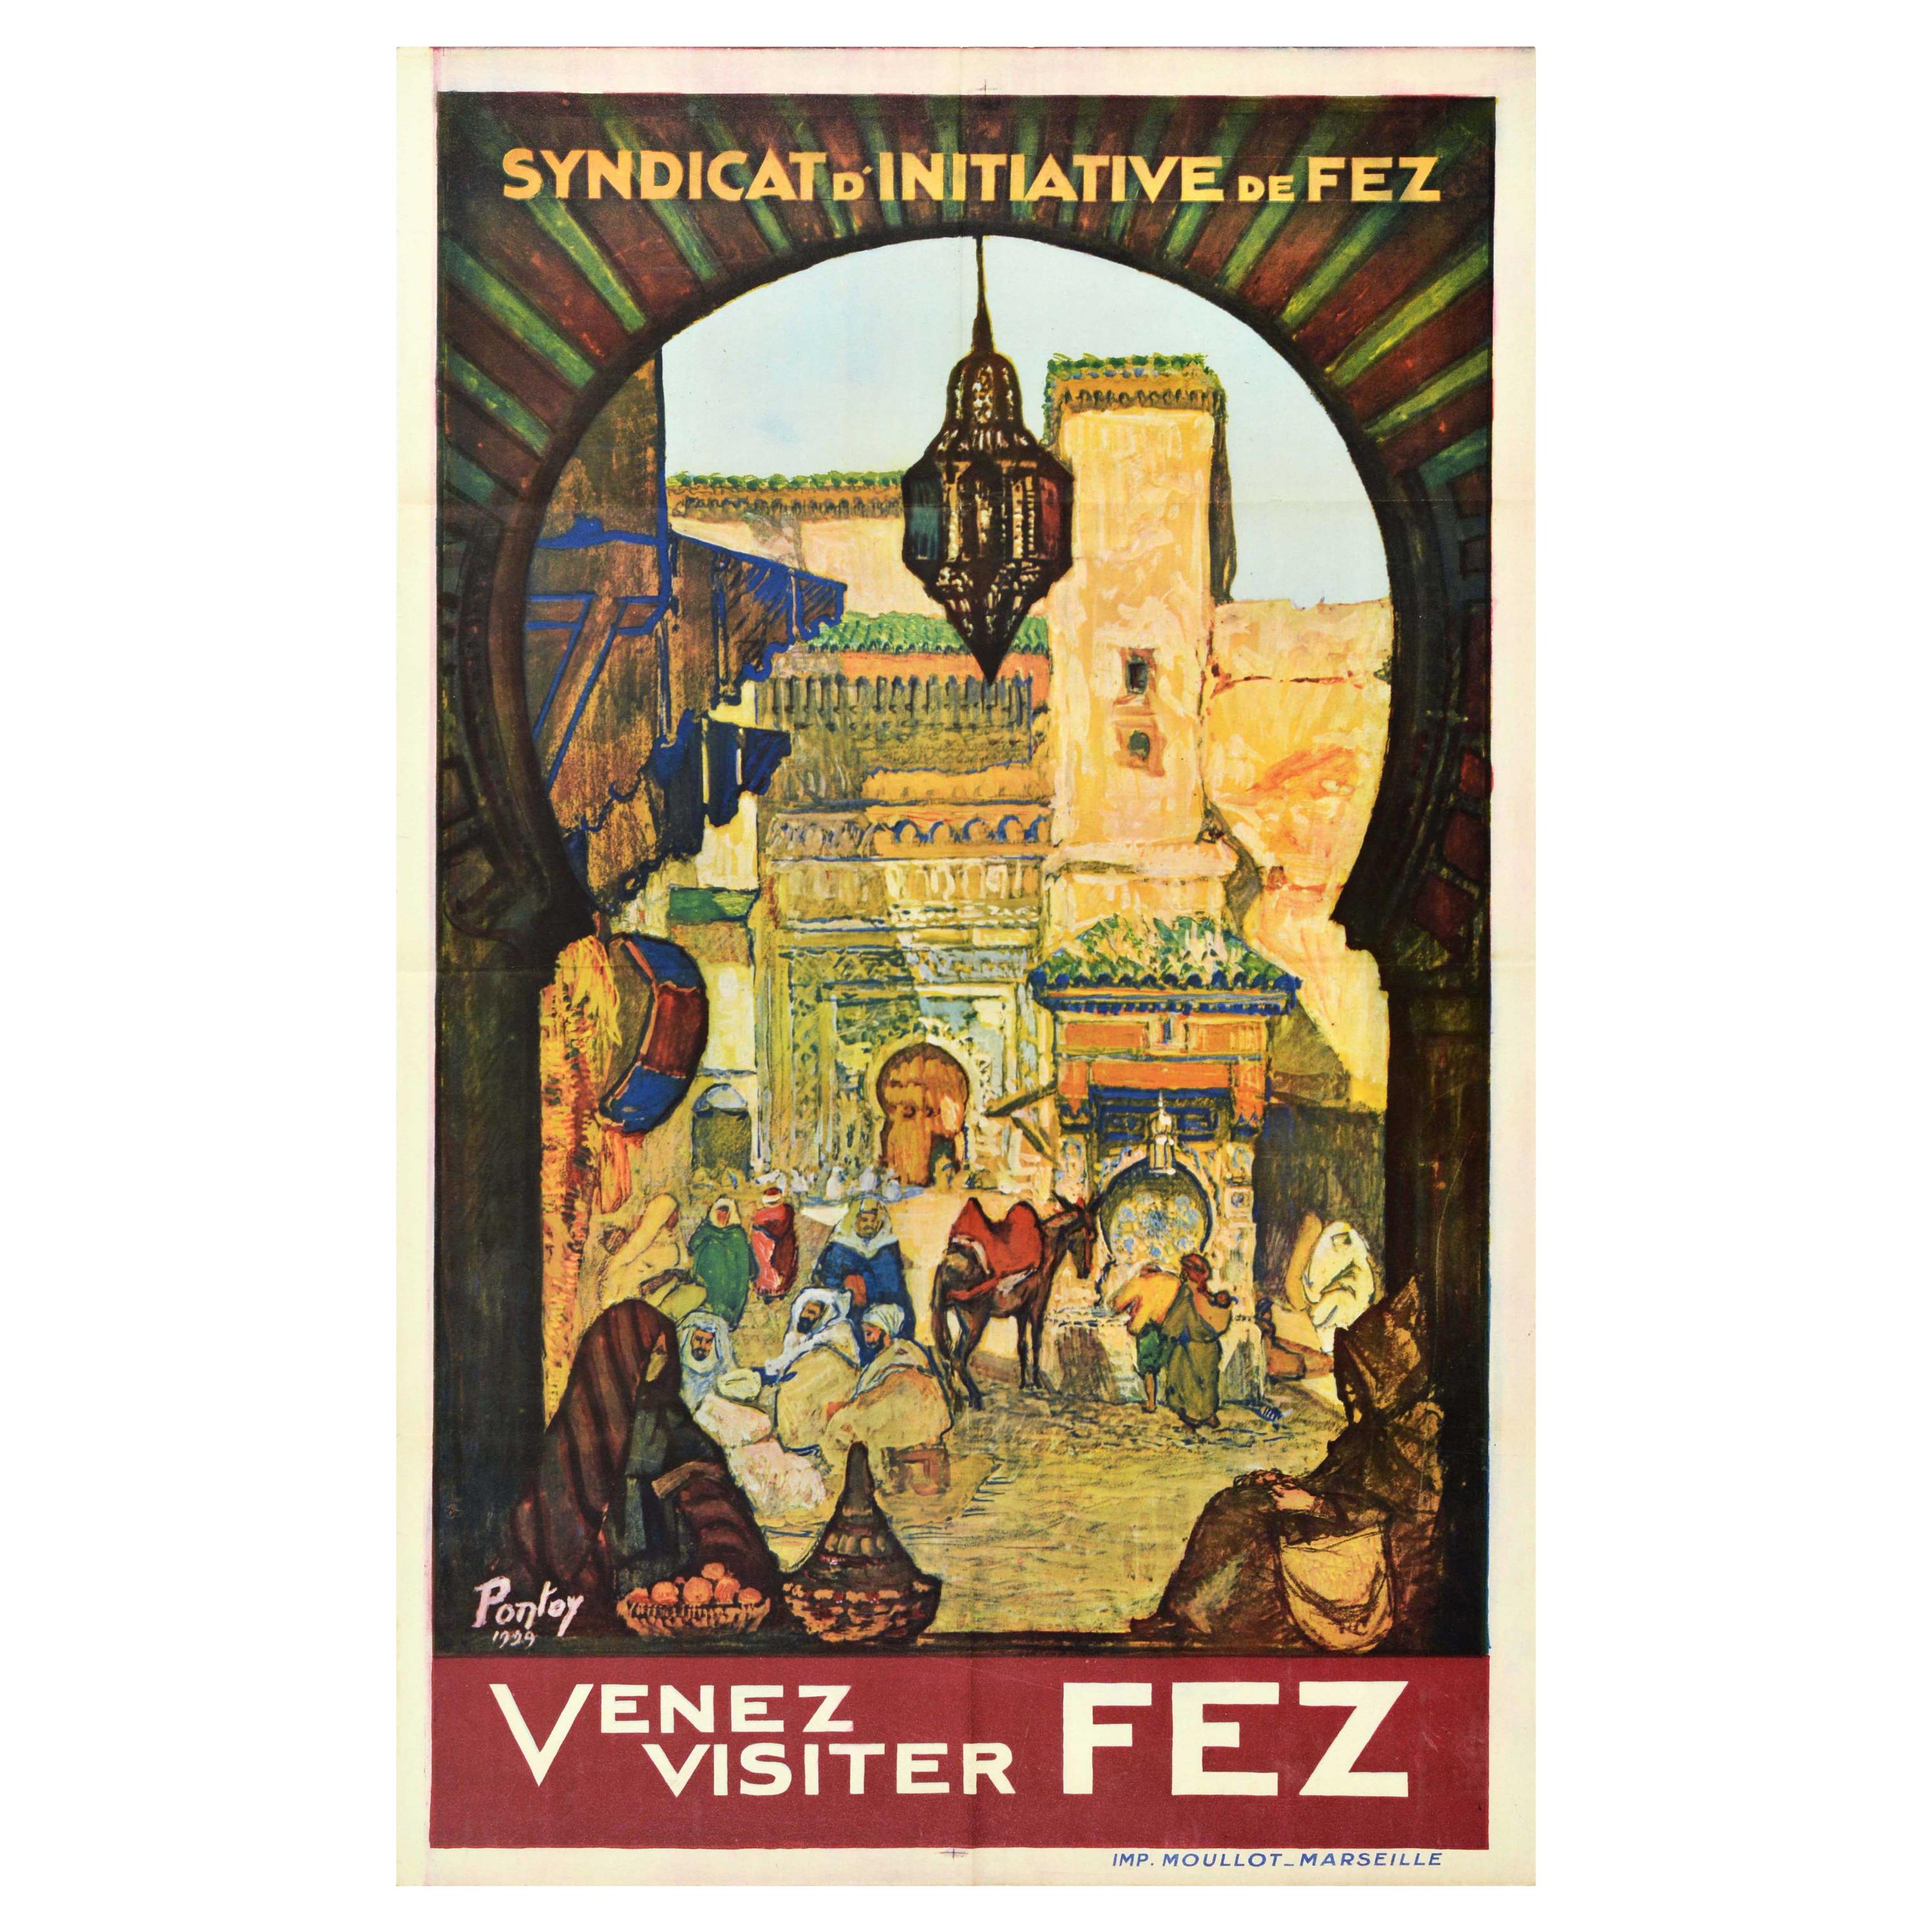 Original Vintage Travel Poster Come Visit Venez Visiter Fez Morocco North Africa